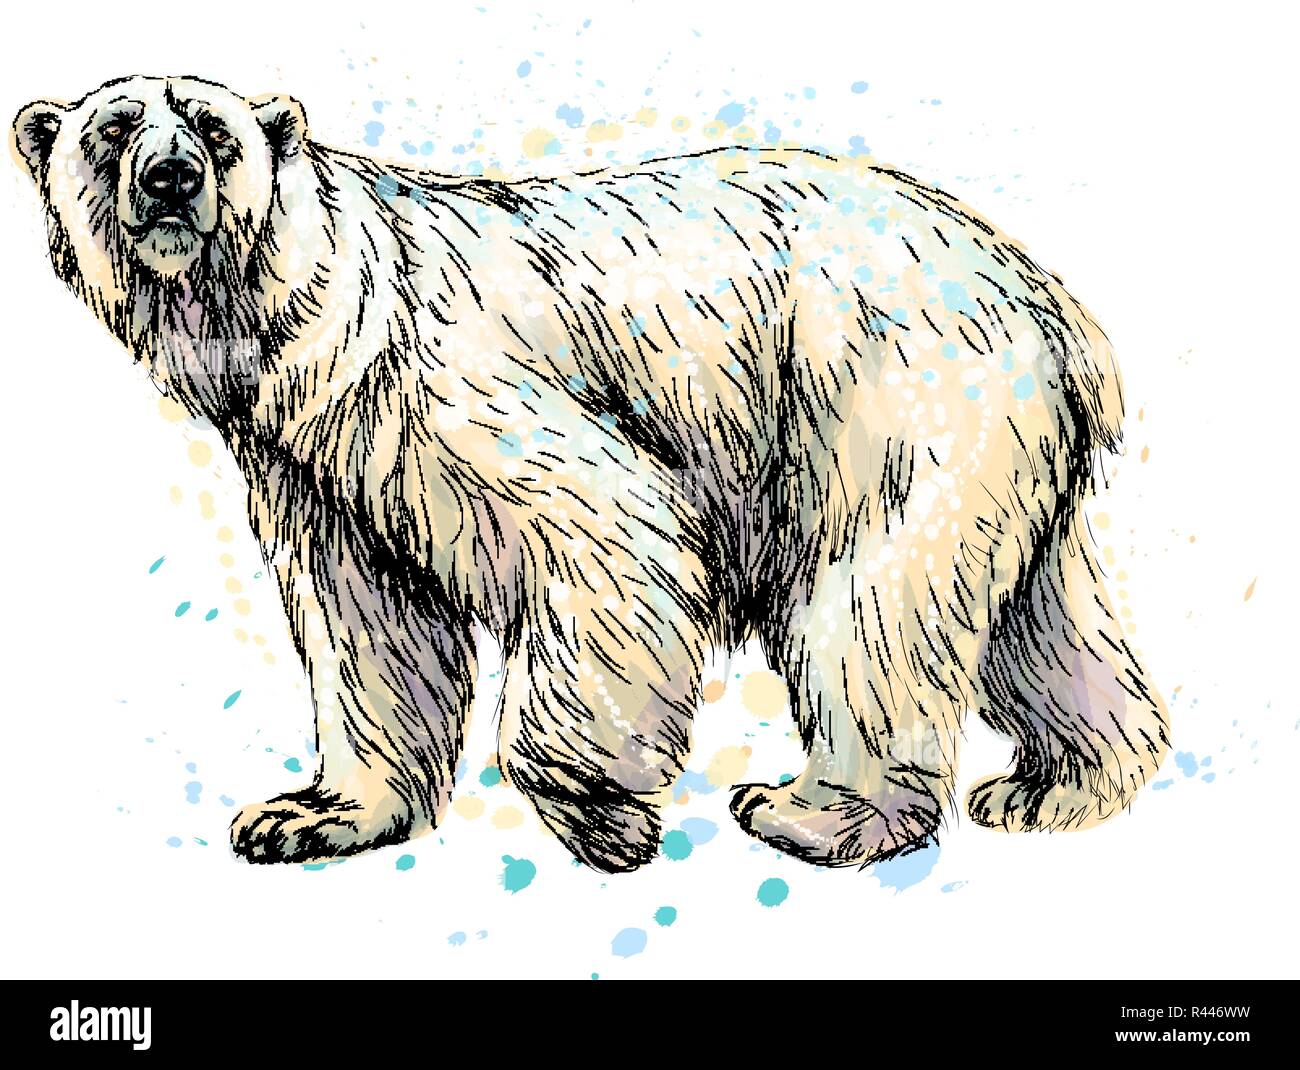 conjunto de lindos animales polares salvajes. colección de fauna del  ártico. lindos personajes de dibujos animados aislados sobre fondo blanco  7658715 Vector en Vecteezy